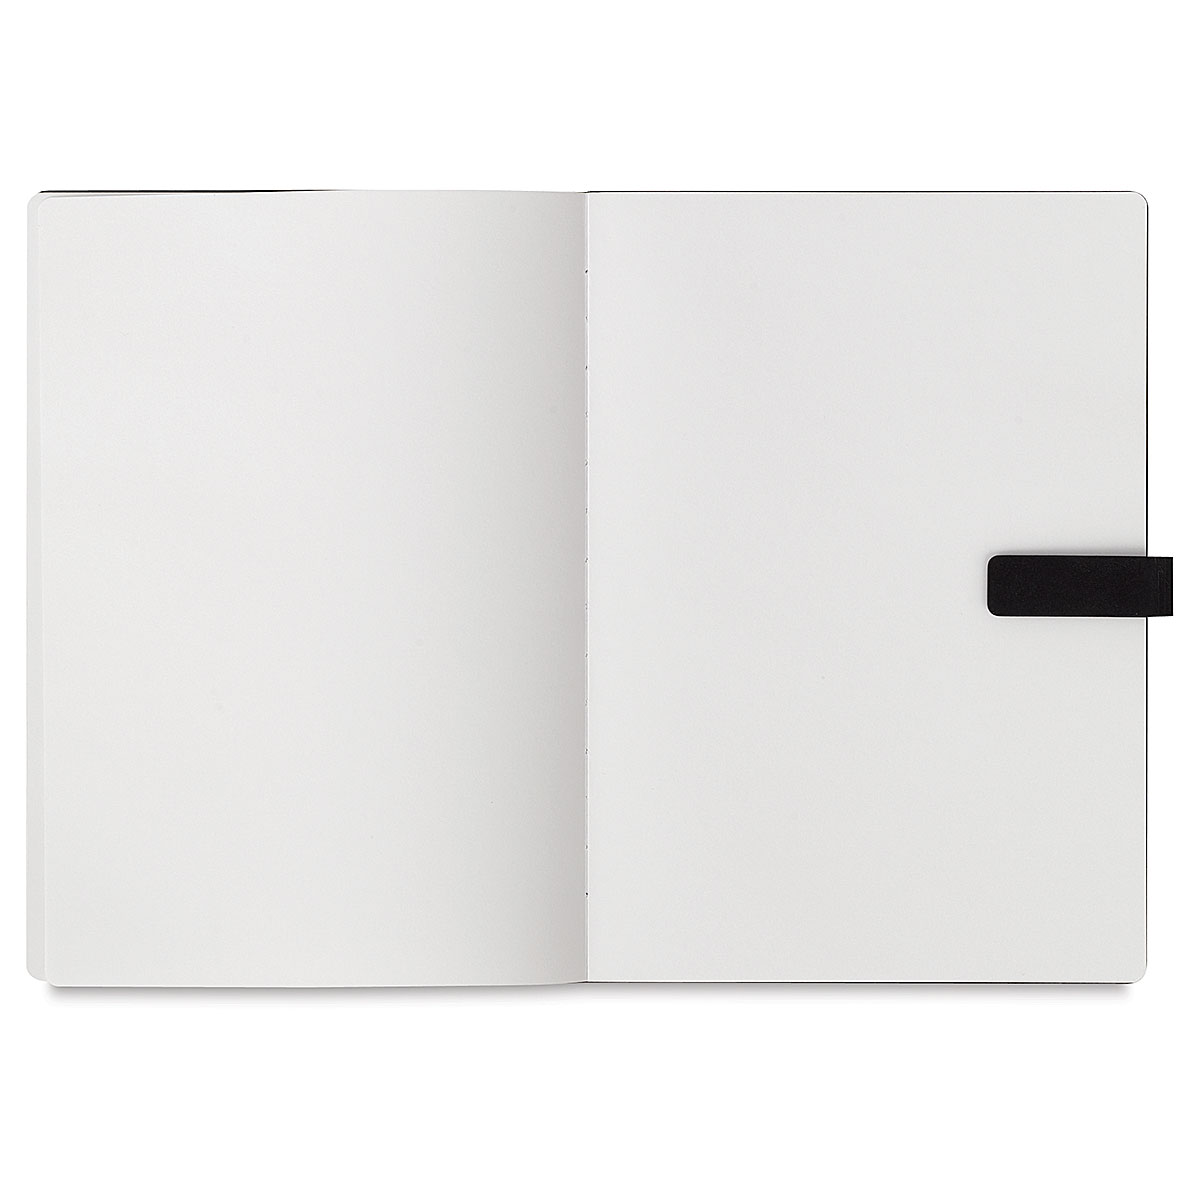 Canson Hardbound Sketchbook Size: 8.5 H x 5.5 W